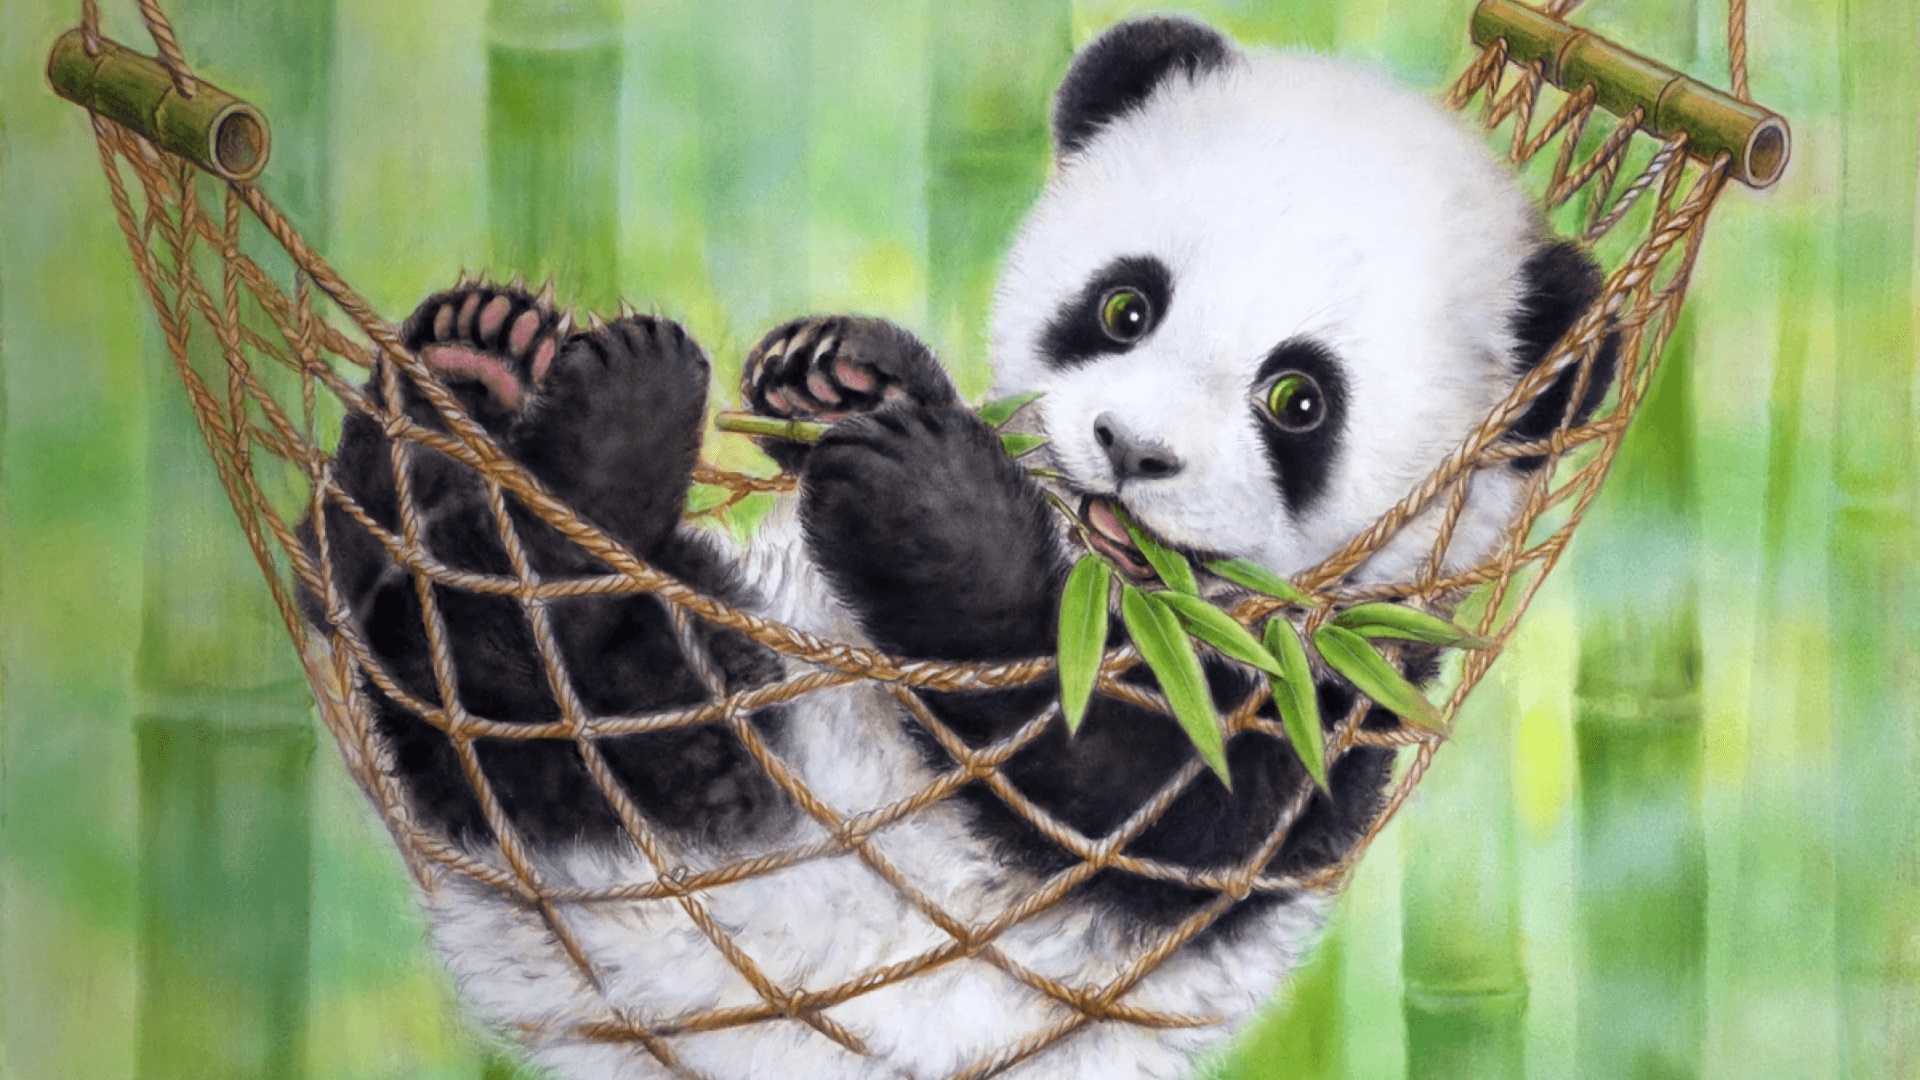 Panda Wallpaper 1